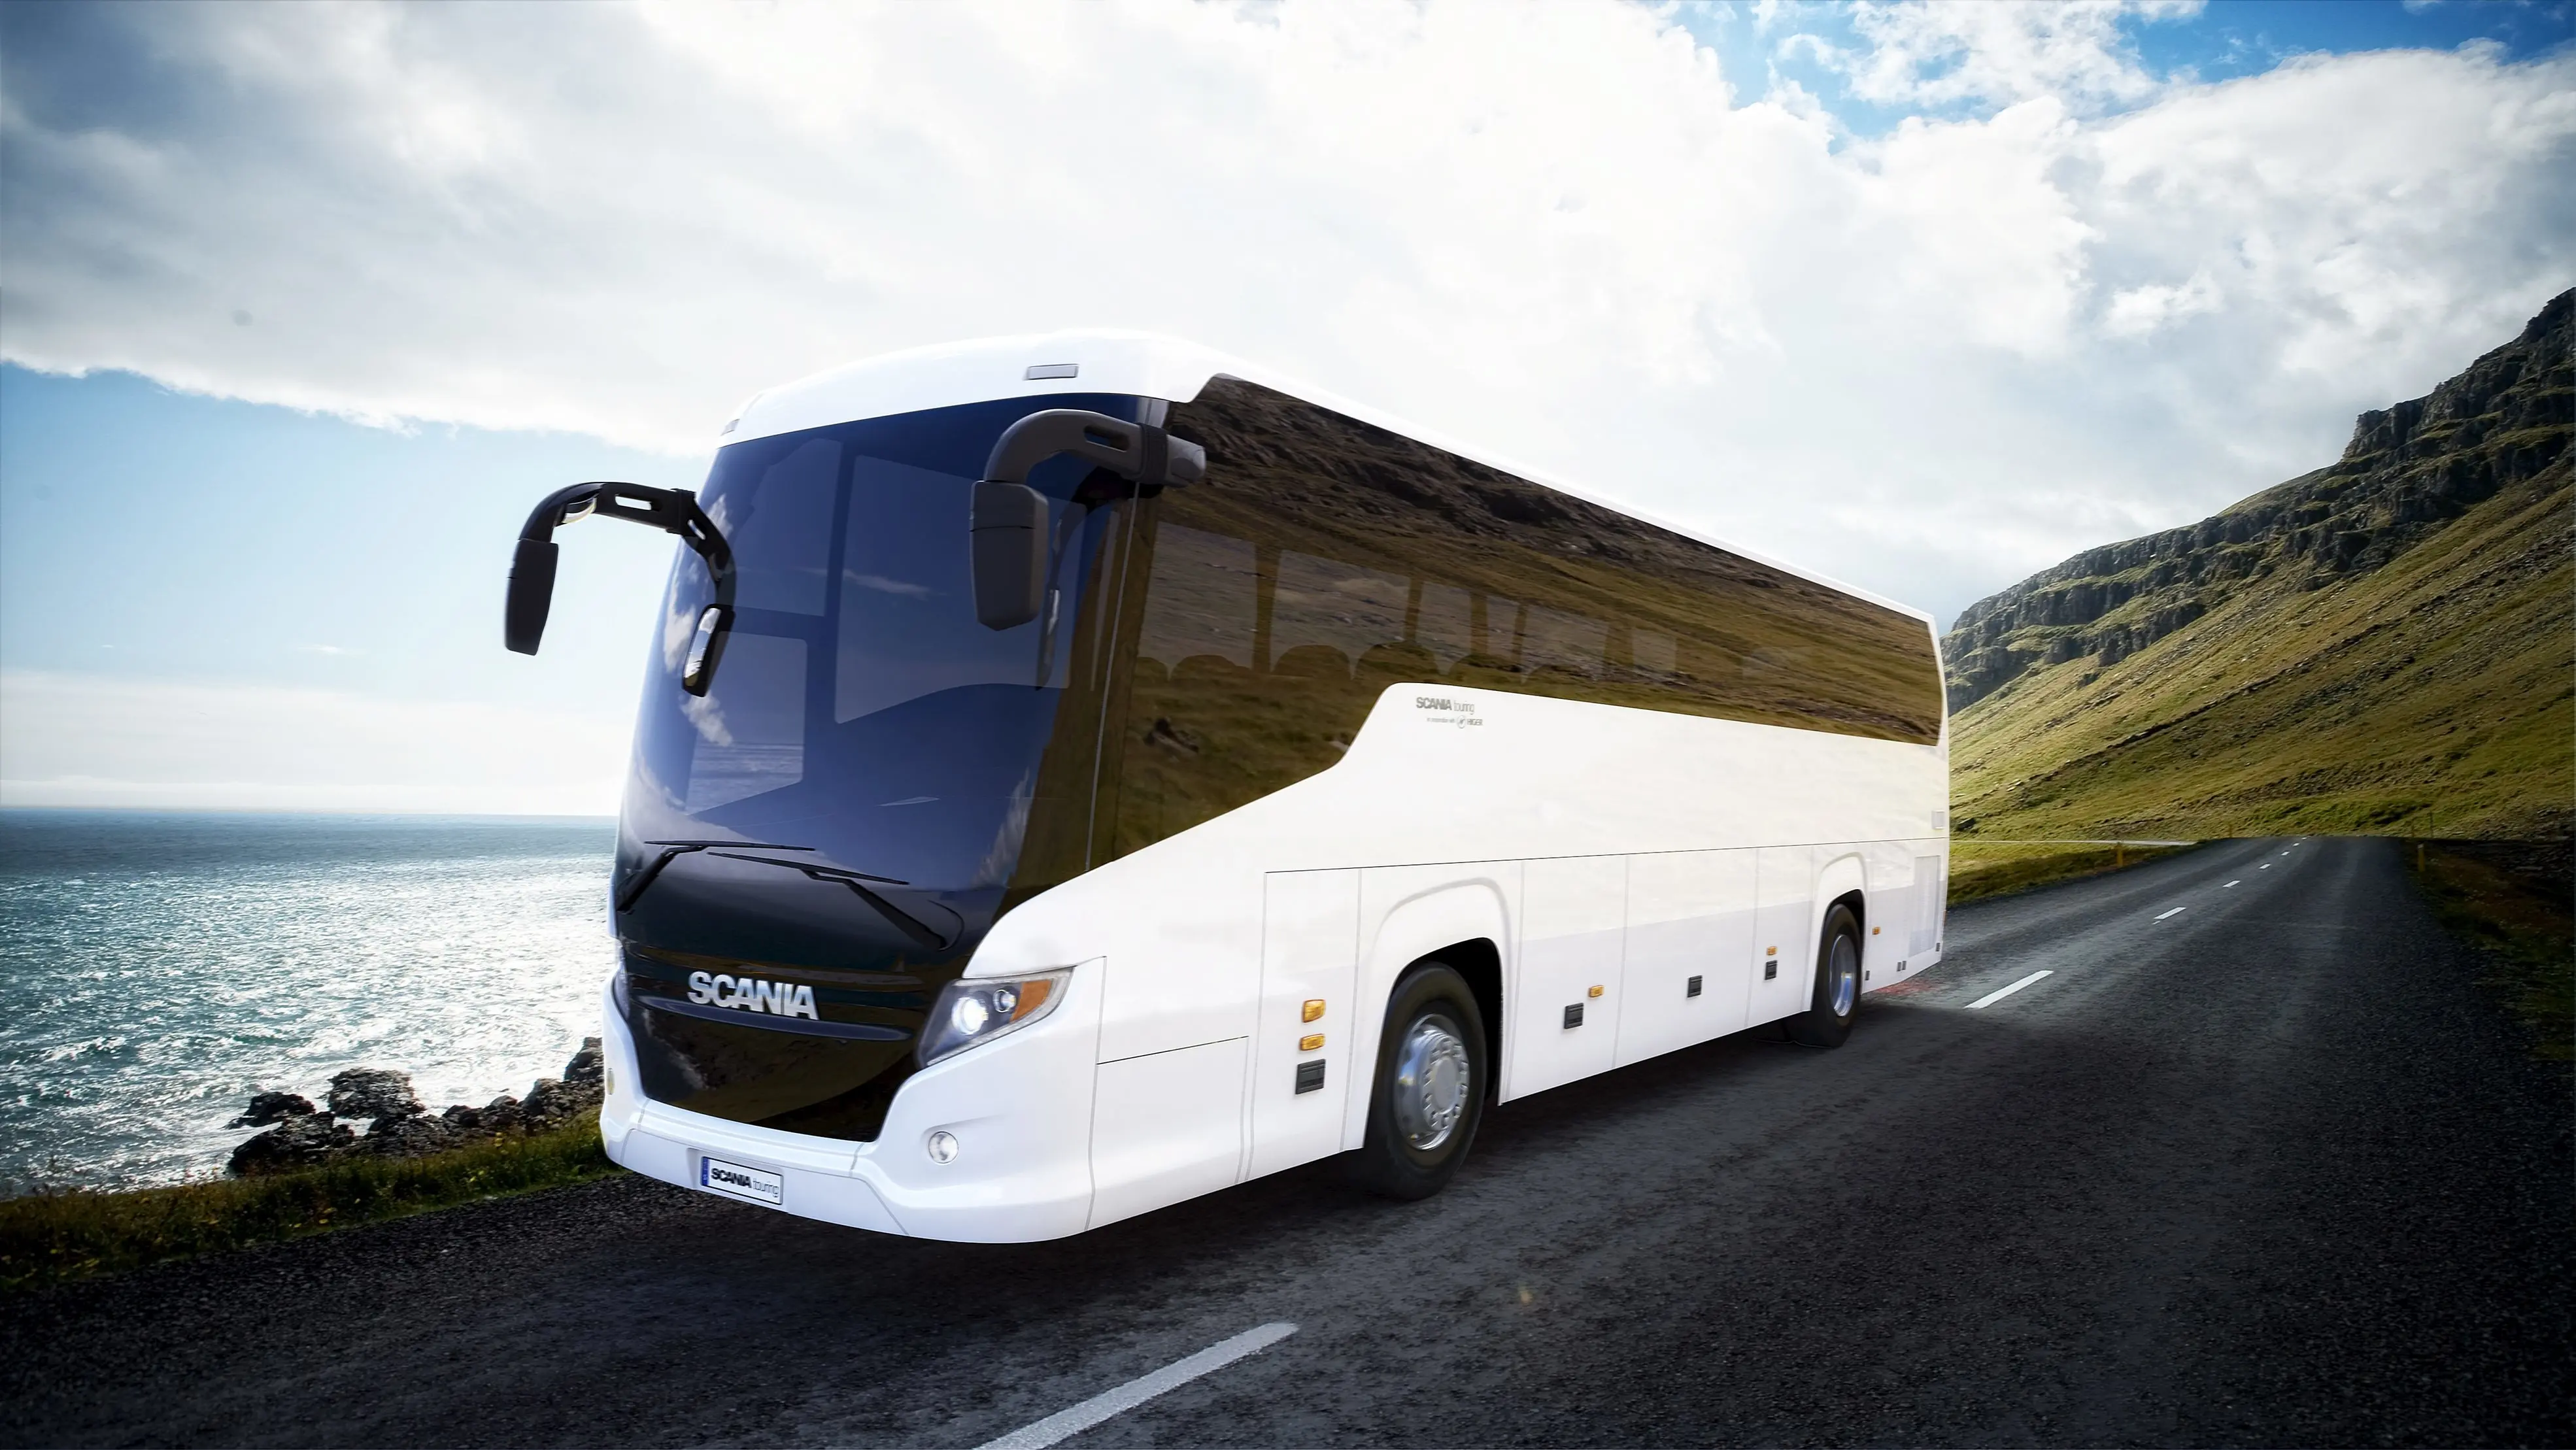 کلیه شرکتهای حمل ونقل مسافربری استان موظف به پذیرایی مطلوب مسافران در اتوبوسها  هستند